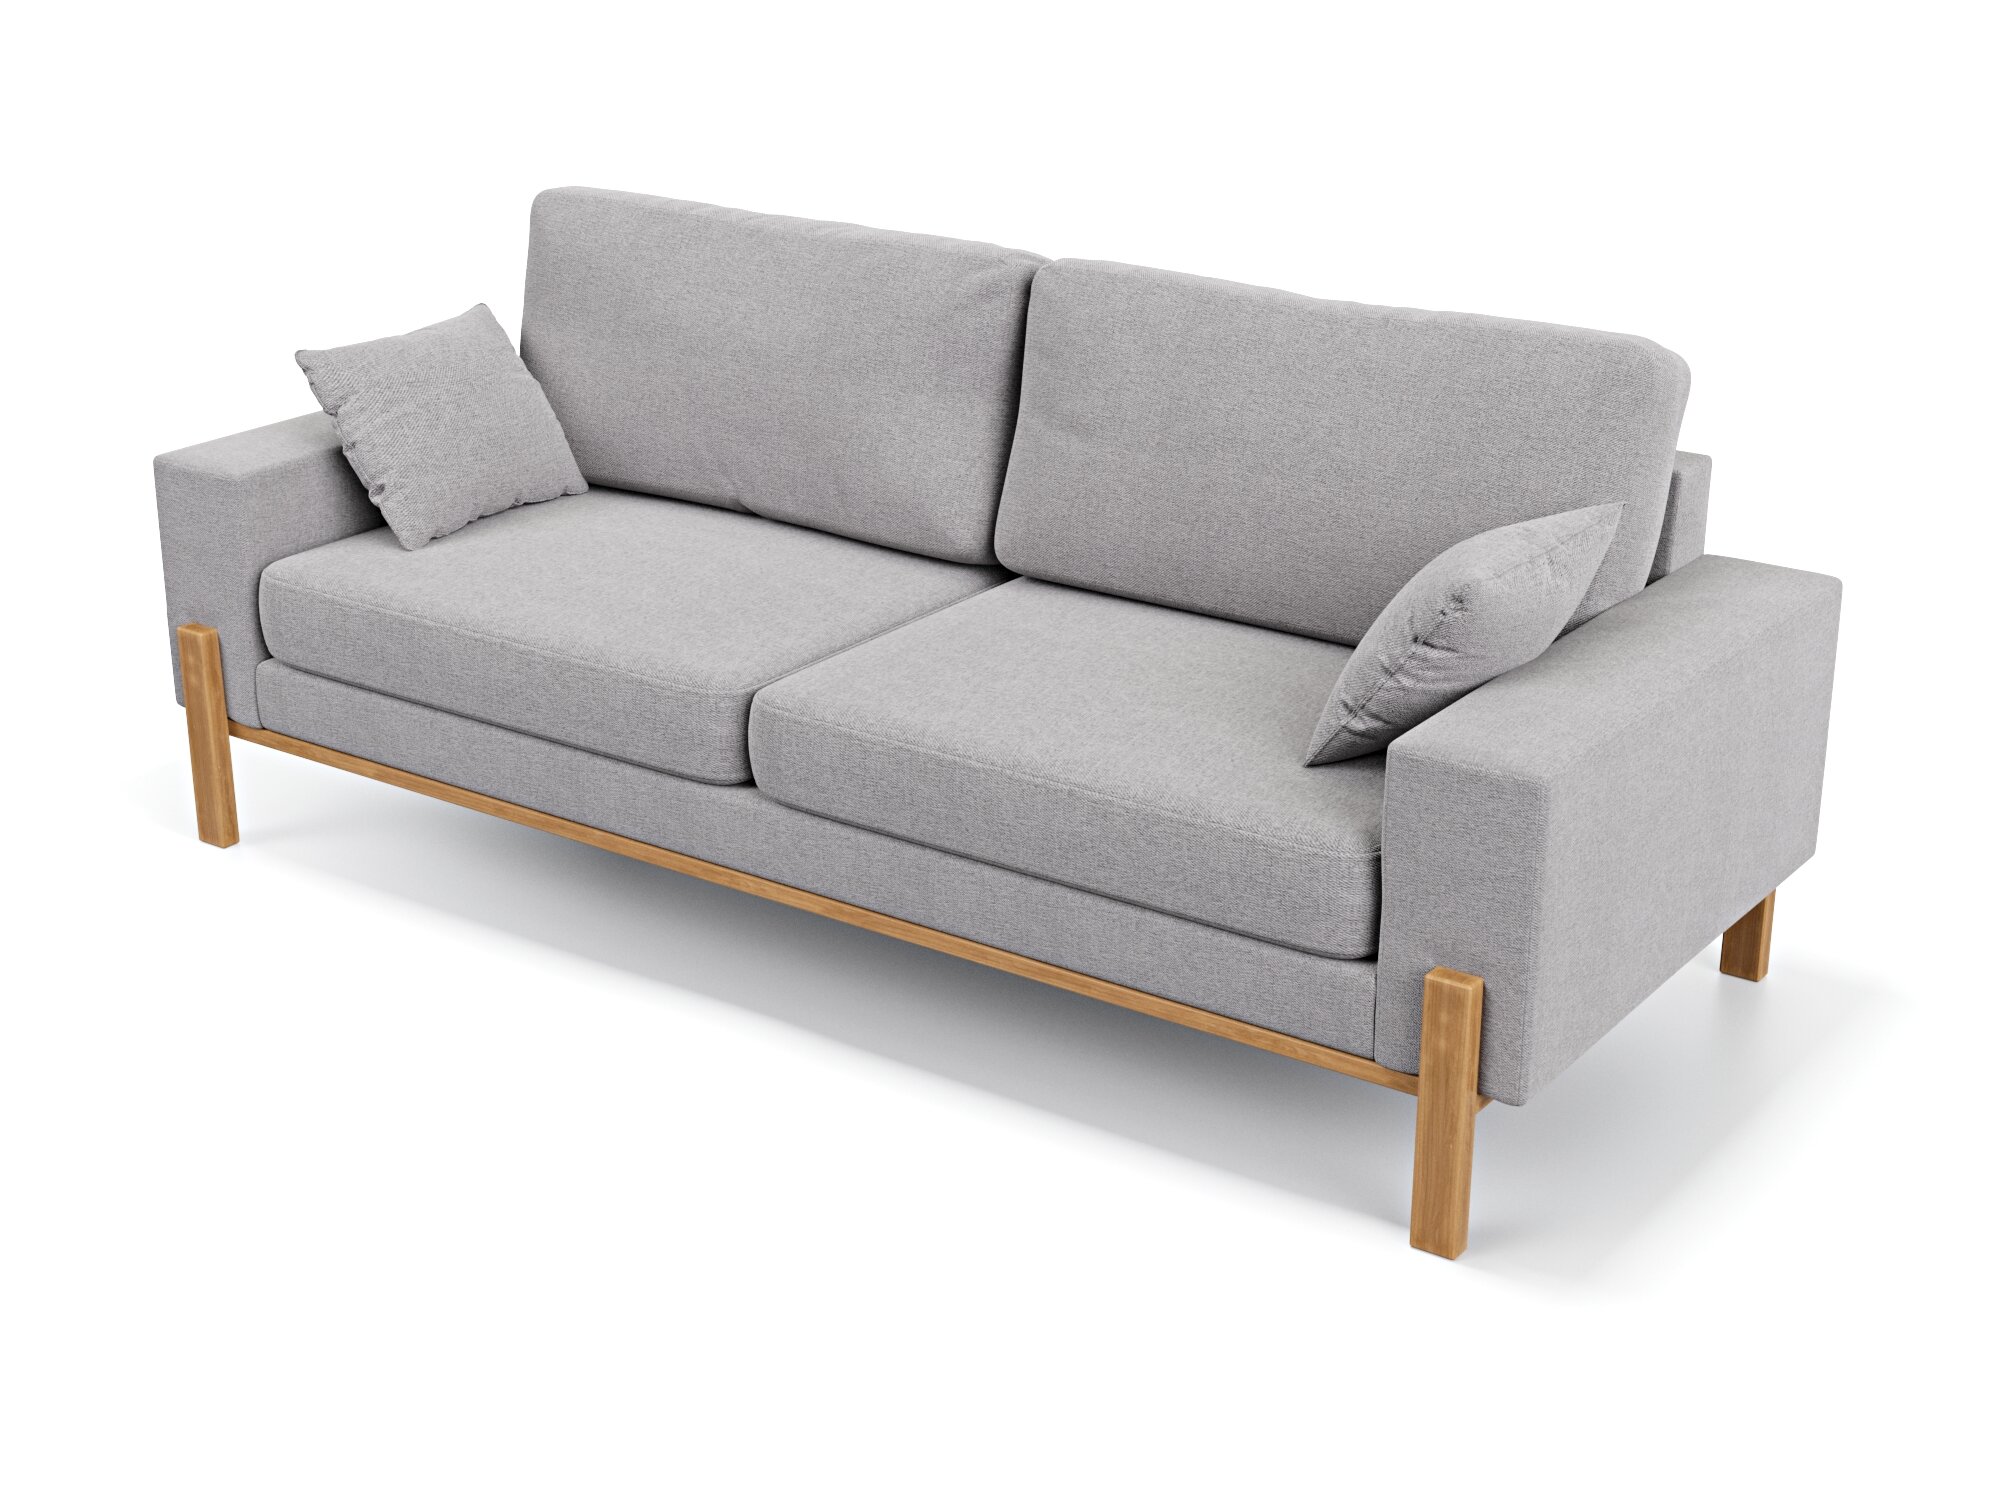 Прямой дизайнерский диван Soft Element Хангель, трехместный, массив дерева, рогожка, серый, стиль скандинавский лофт, в гостиную, в офис